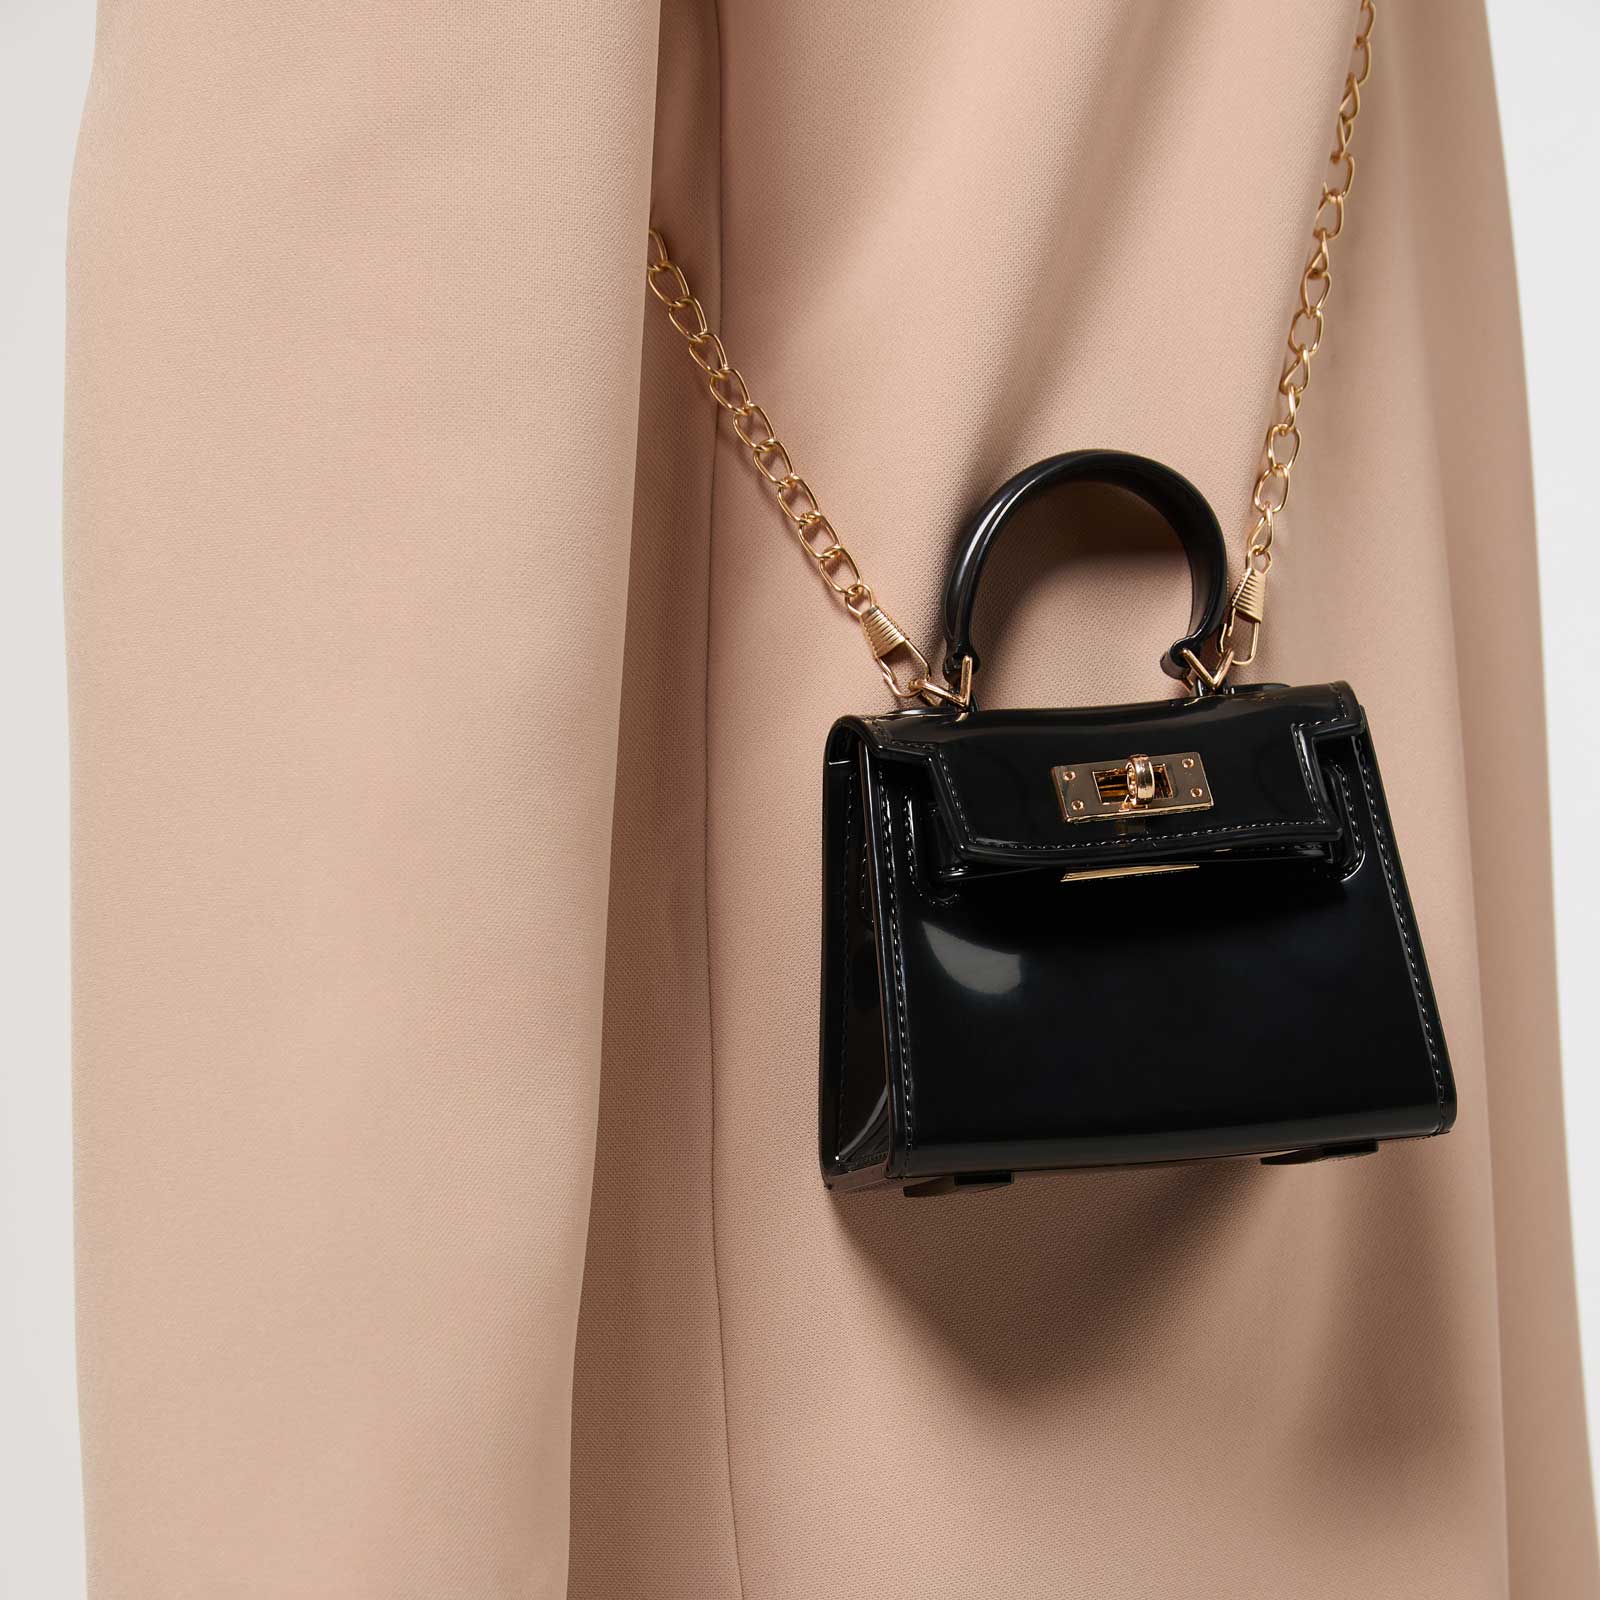 Väska mini, svart lack - guldfärgade detaljer